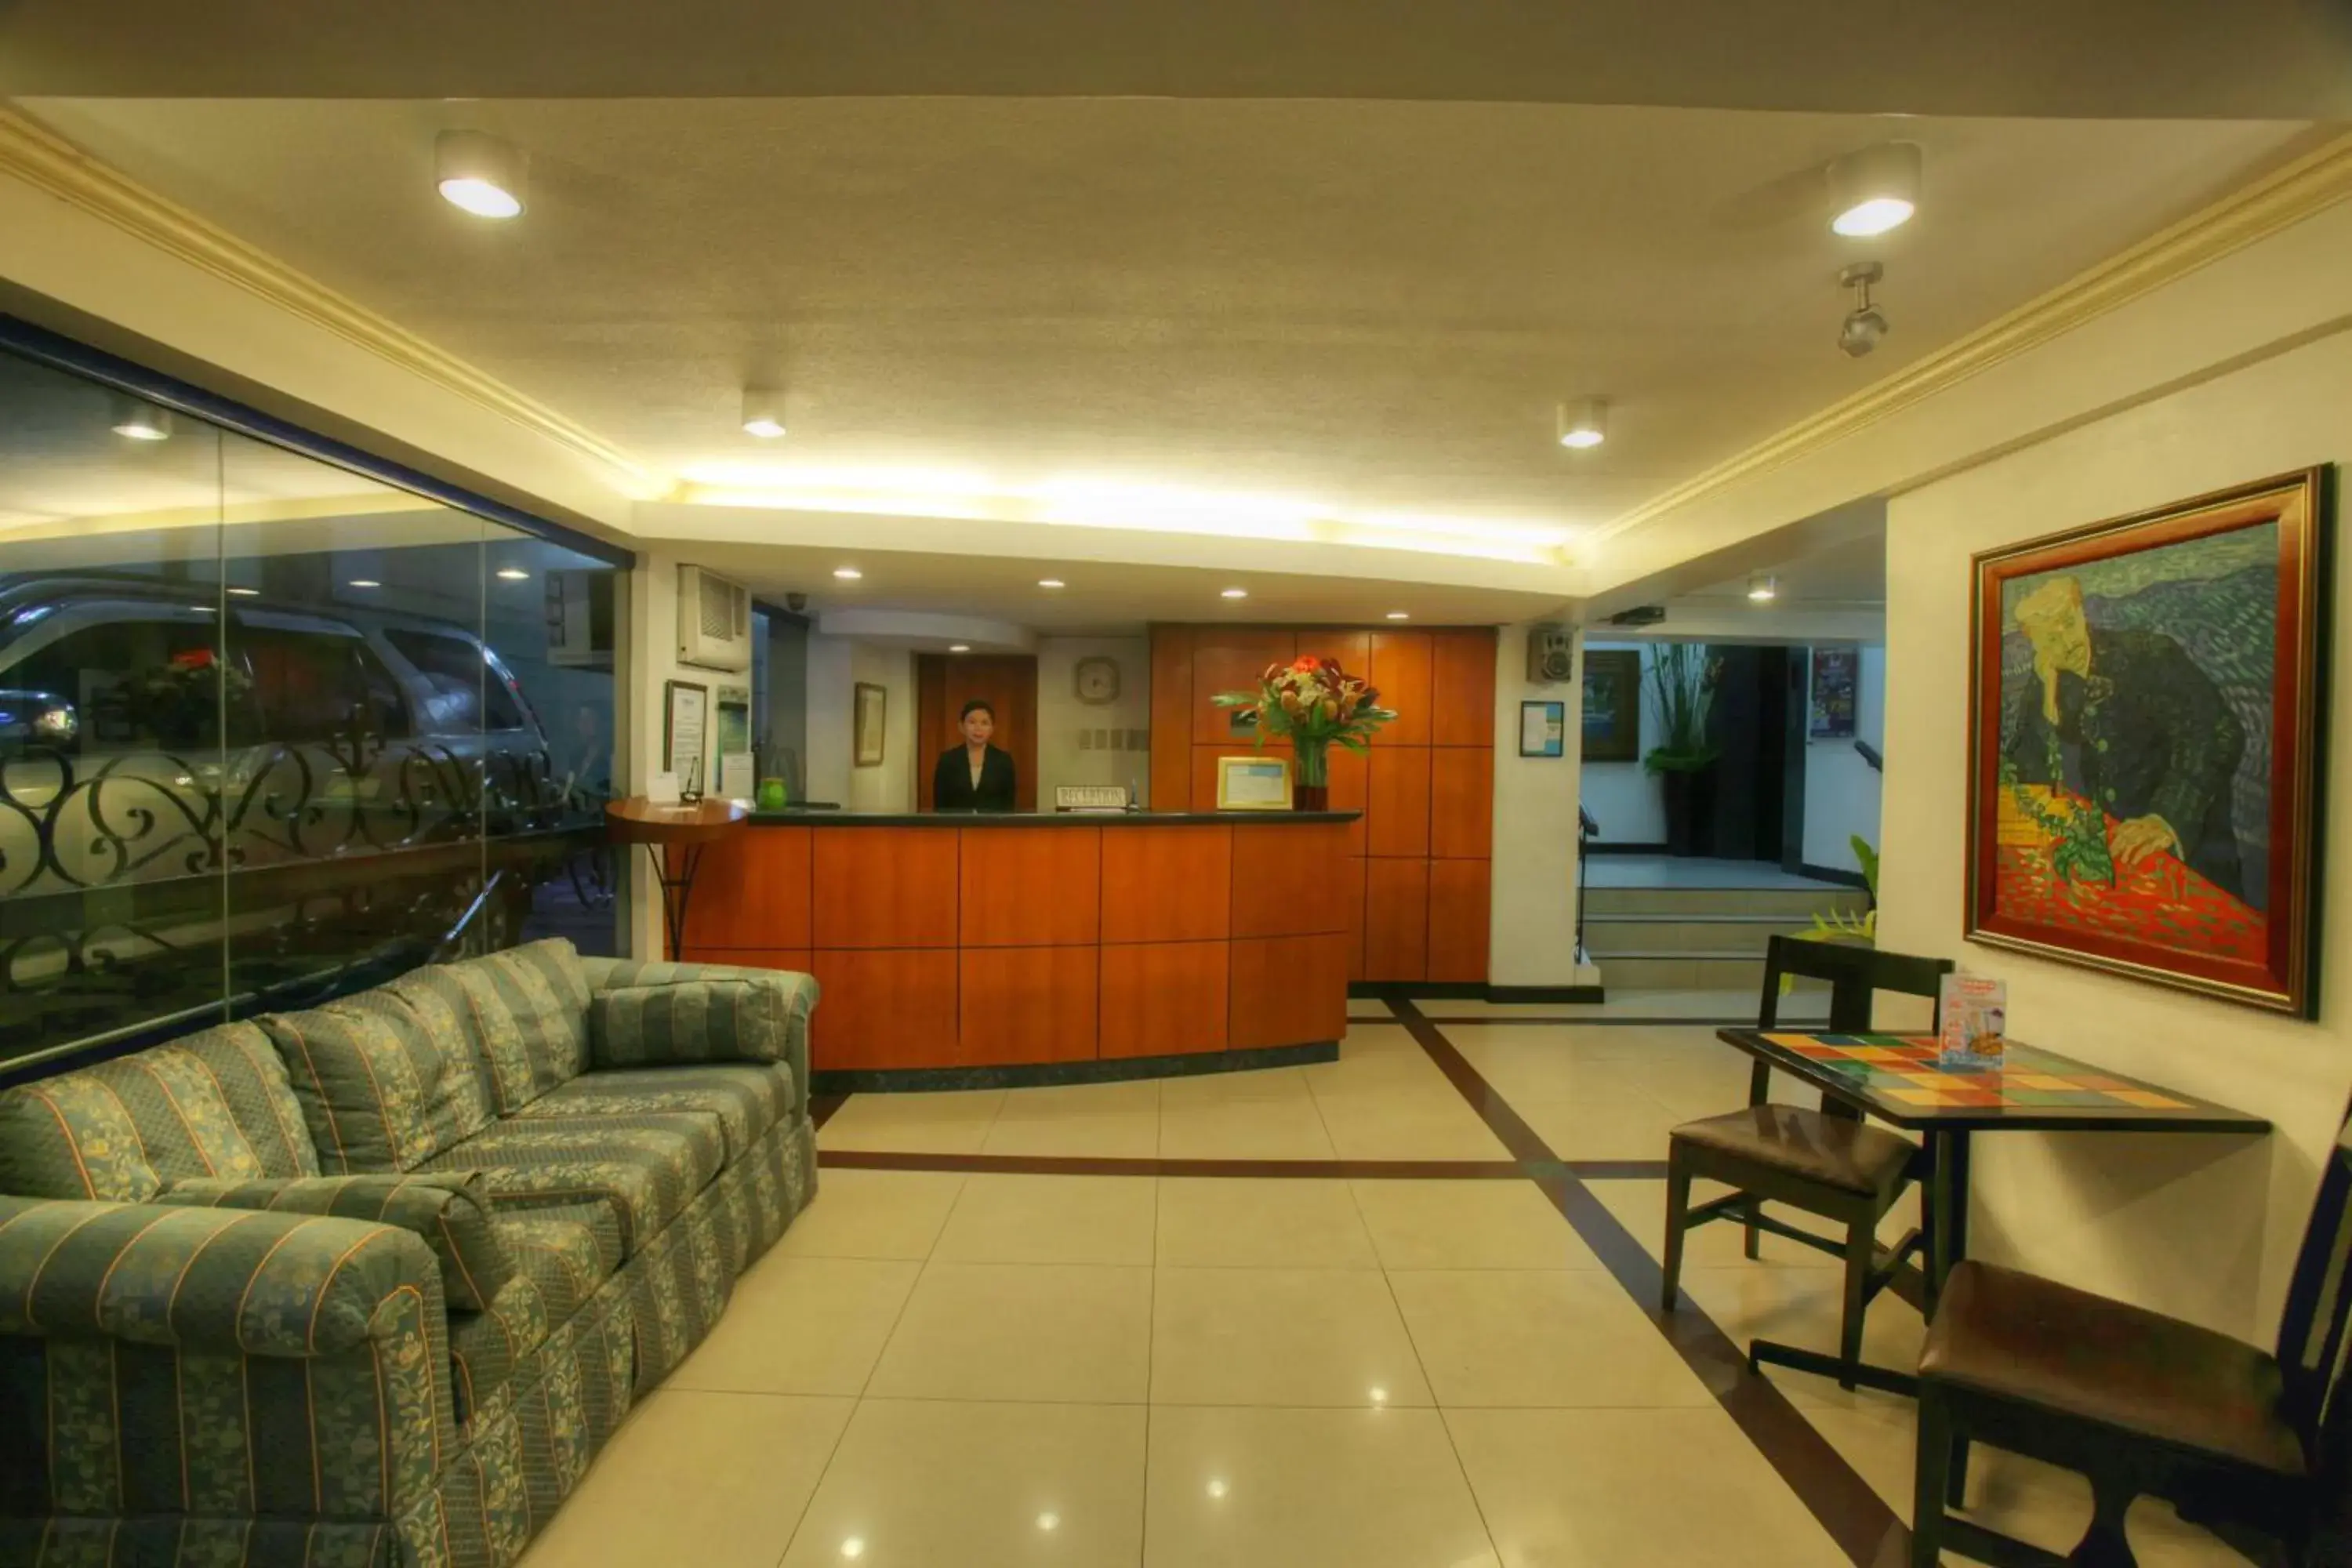 Lobby or reception, Lobby/Reception in Fersal Hotel Manila